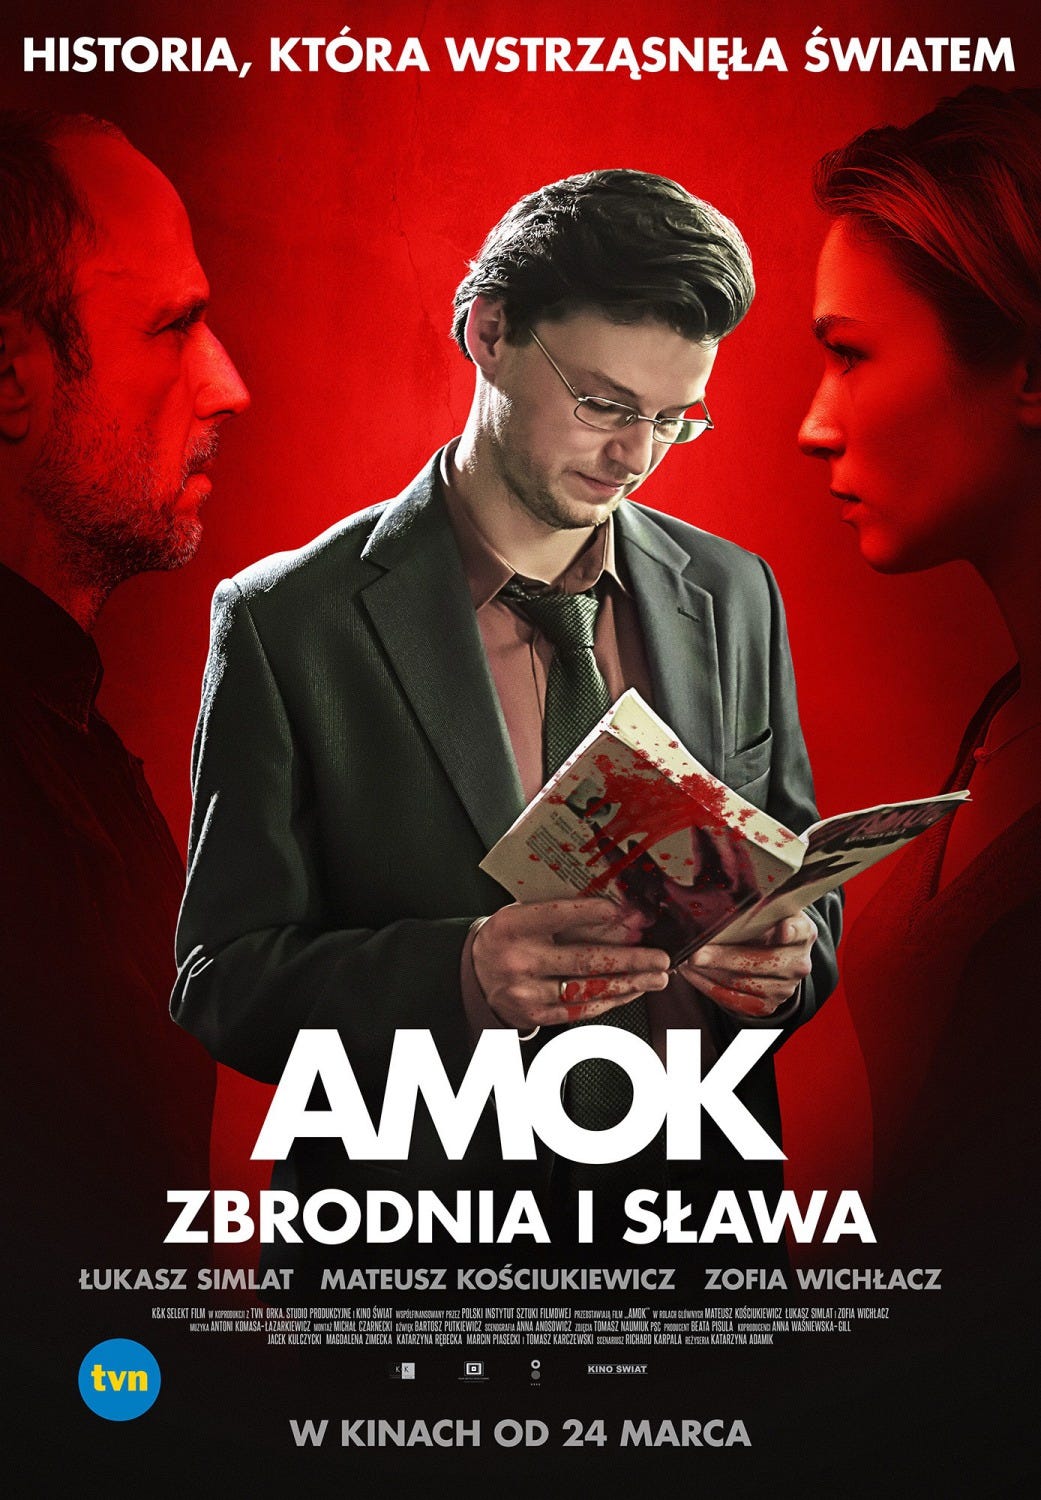 Amok by Krystian Bala, Other - Anobii